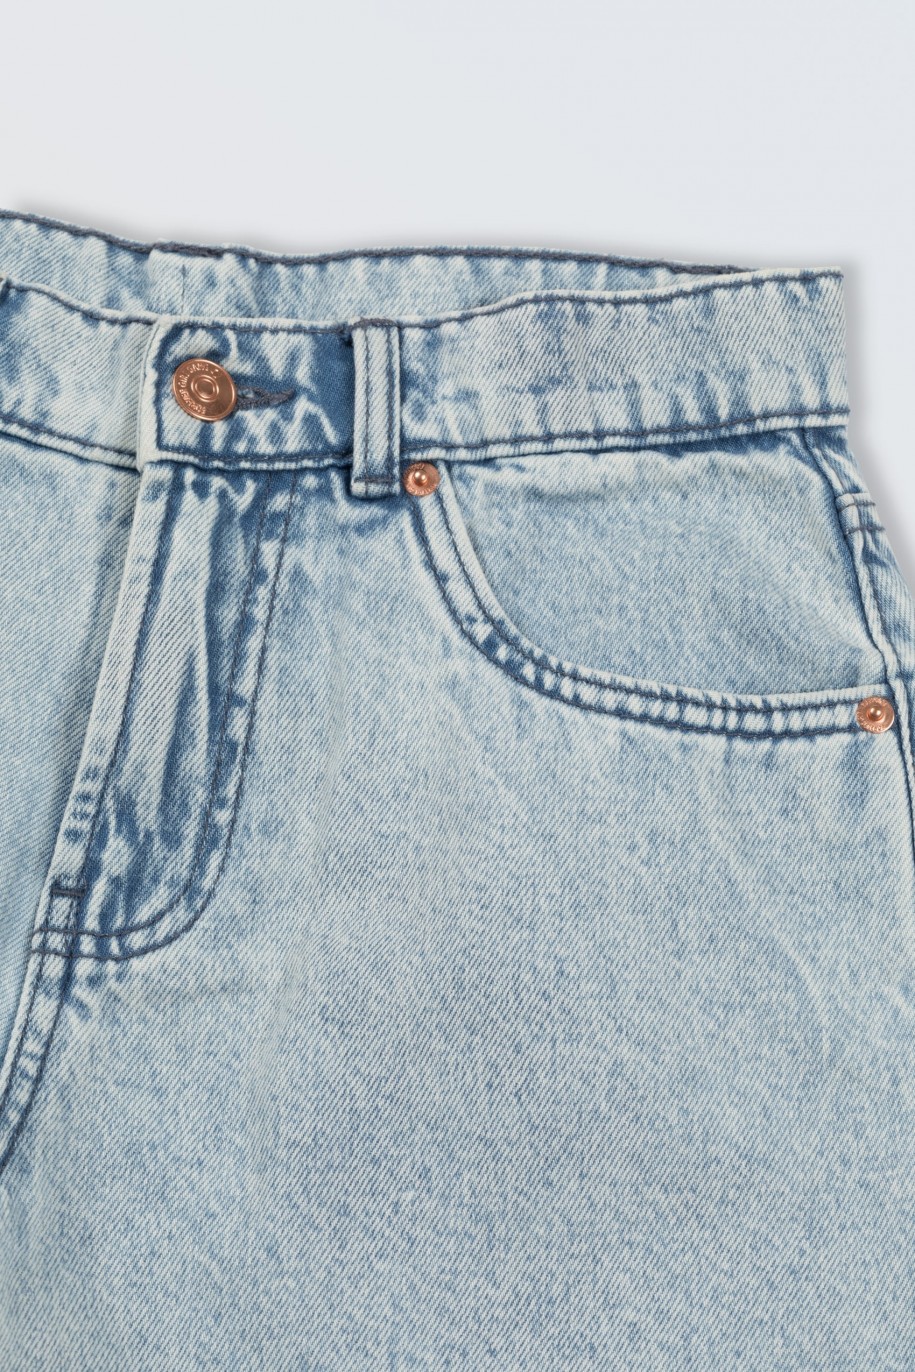 Jasnoniebieskie krótkie spodenki jeansowe - 46574